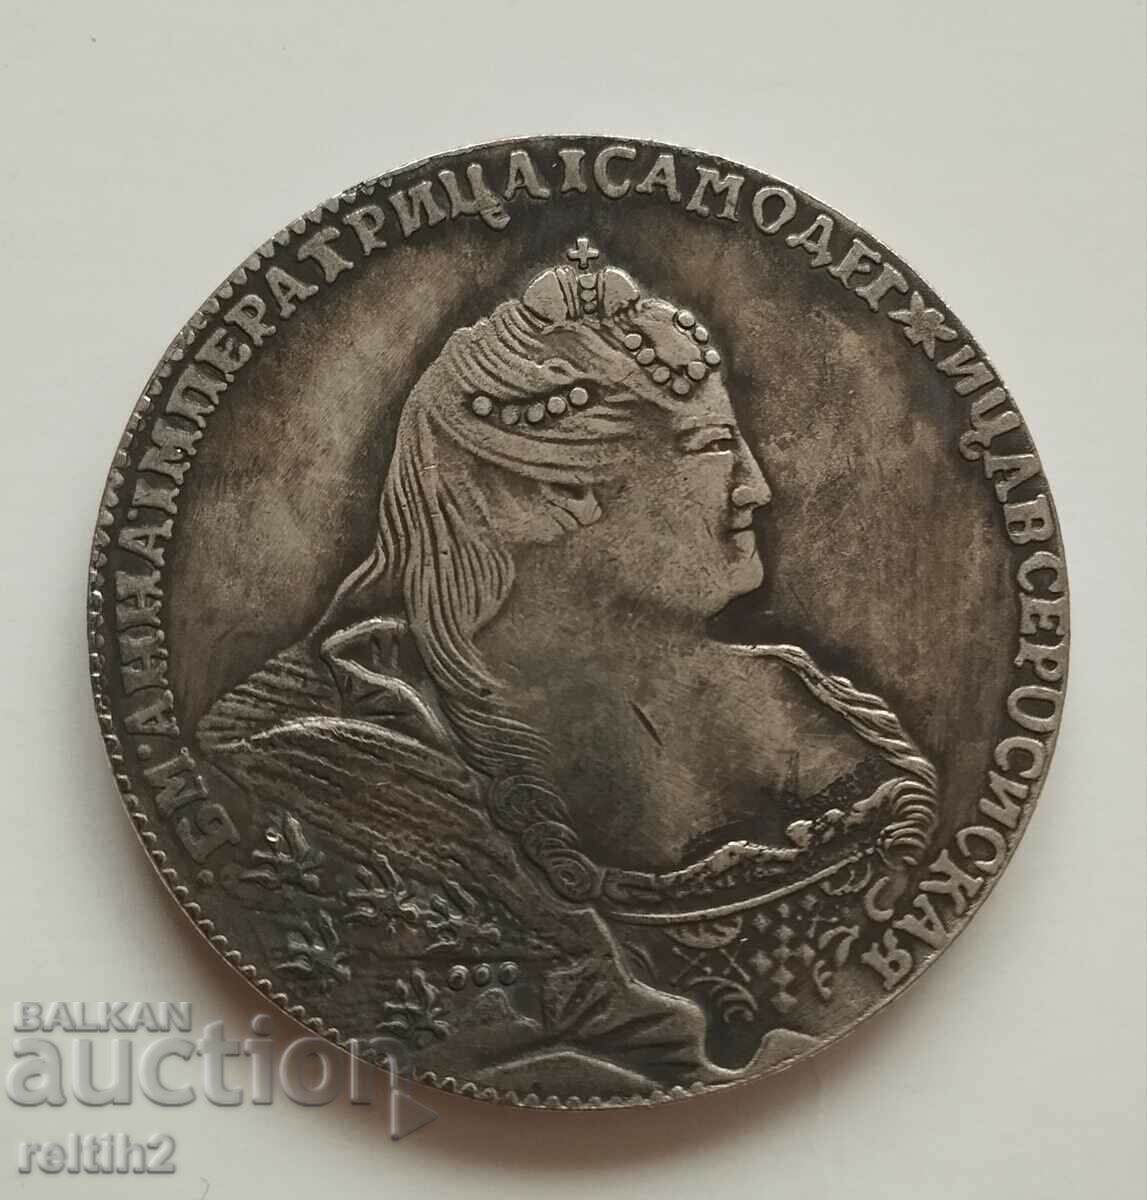 Monedă Rubla 1740 - replică!